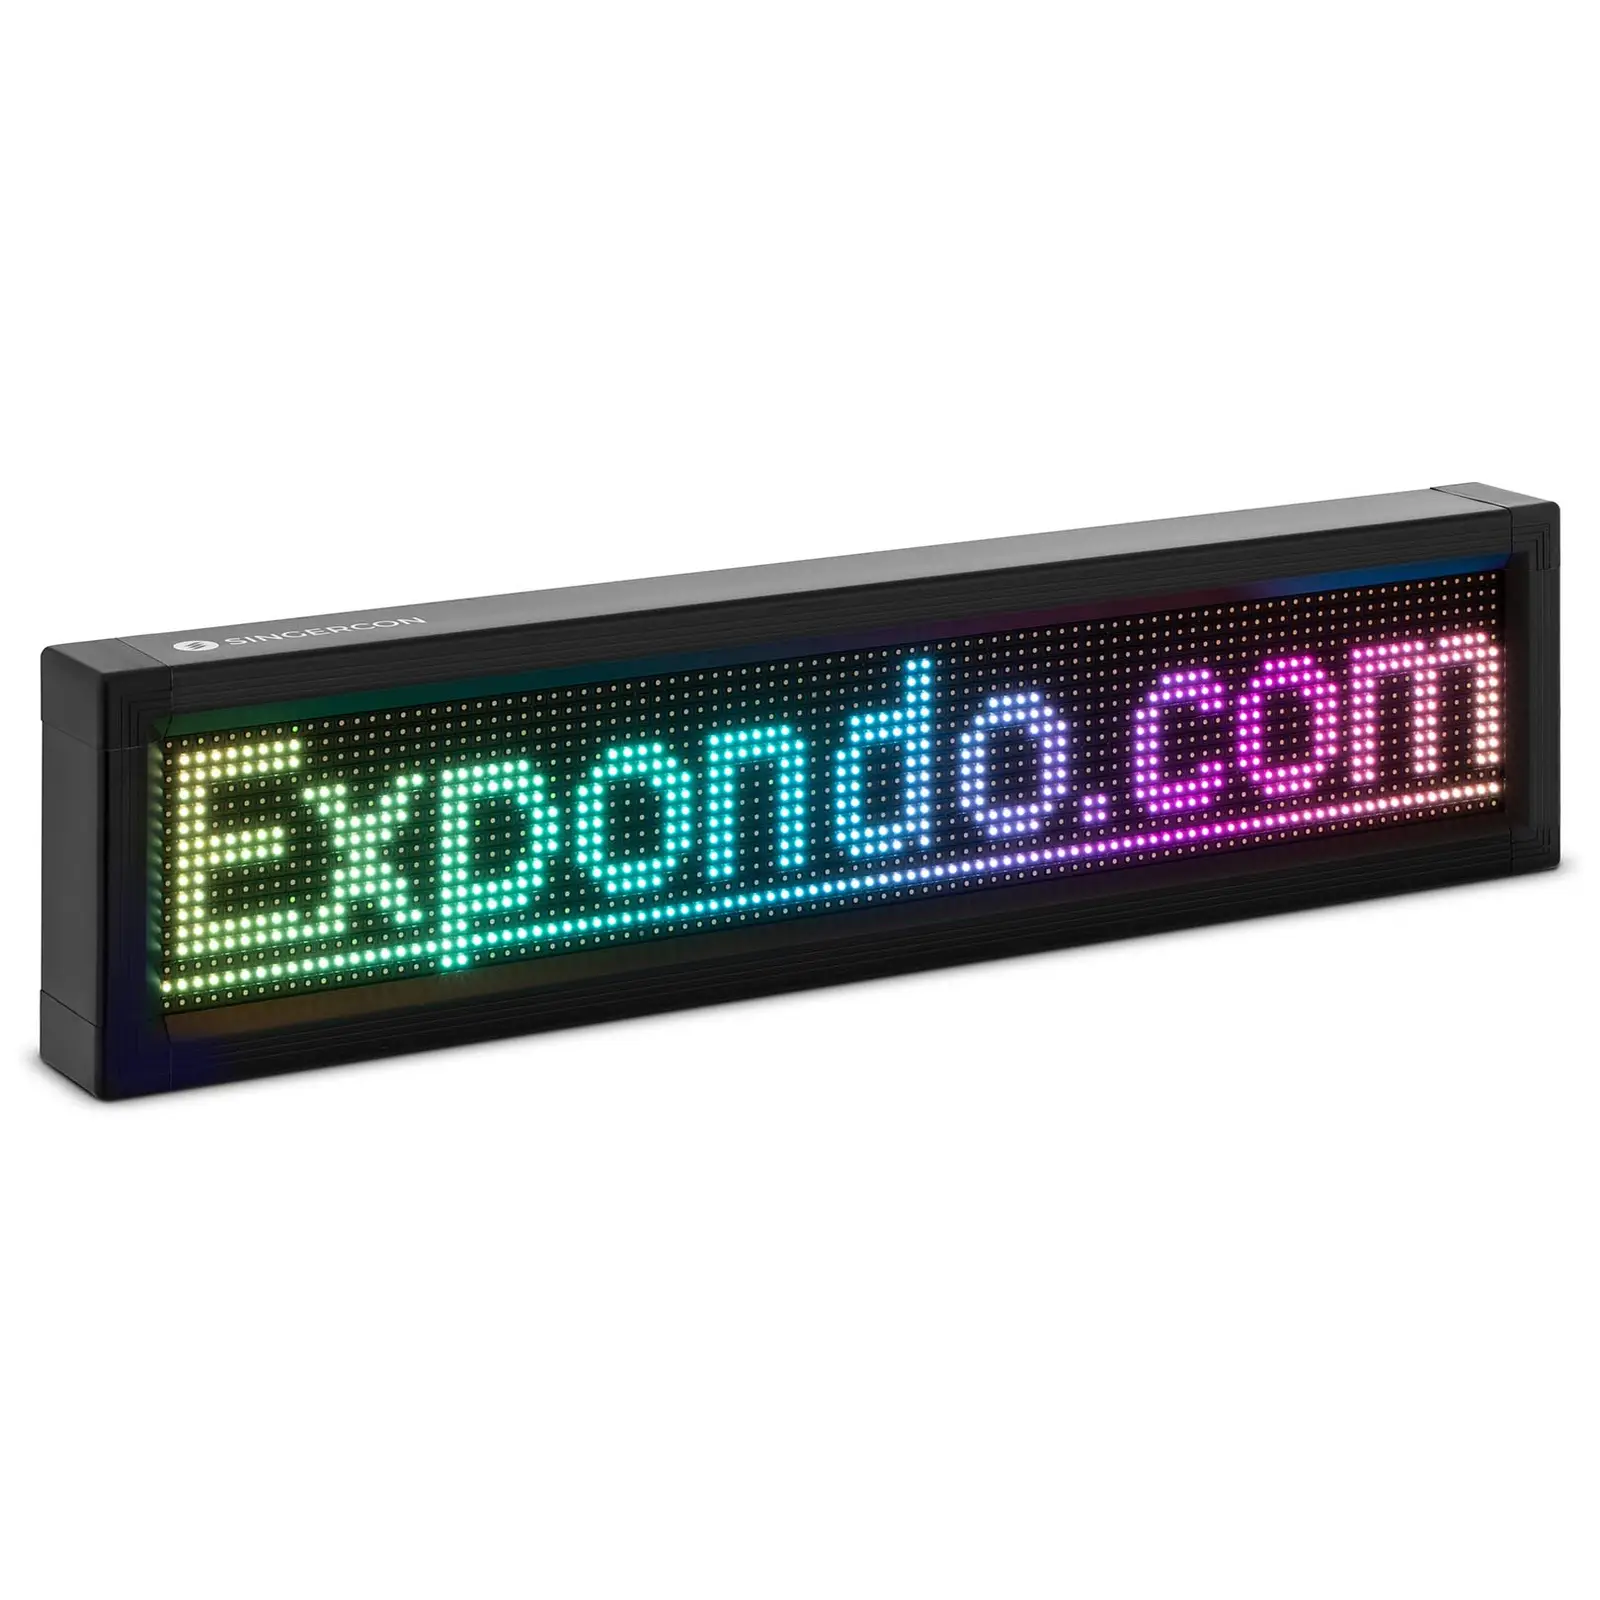 Panneau publicitaire LED - 96 x 16 LED couleur - 105 x 25 cm - Programmable via iOS/Android